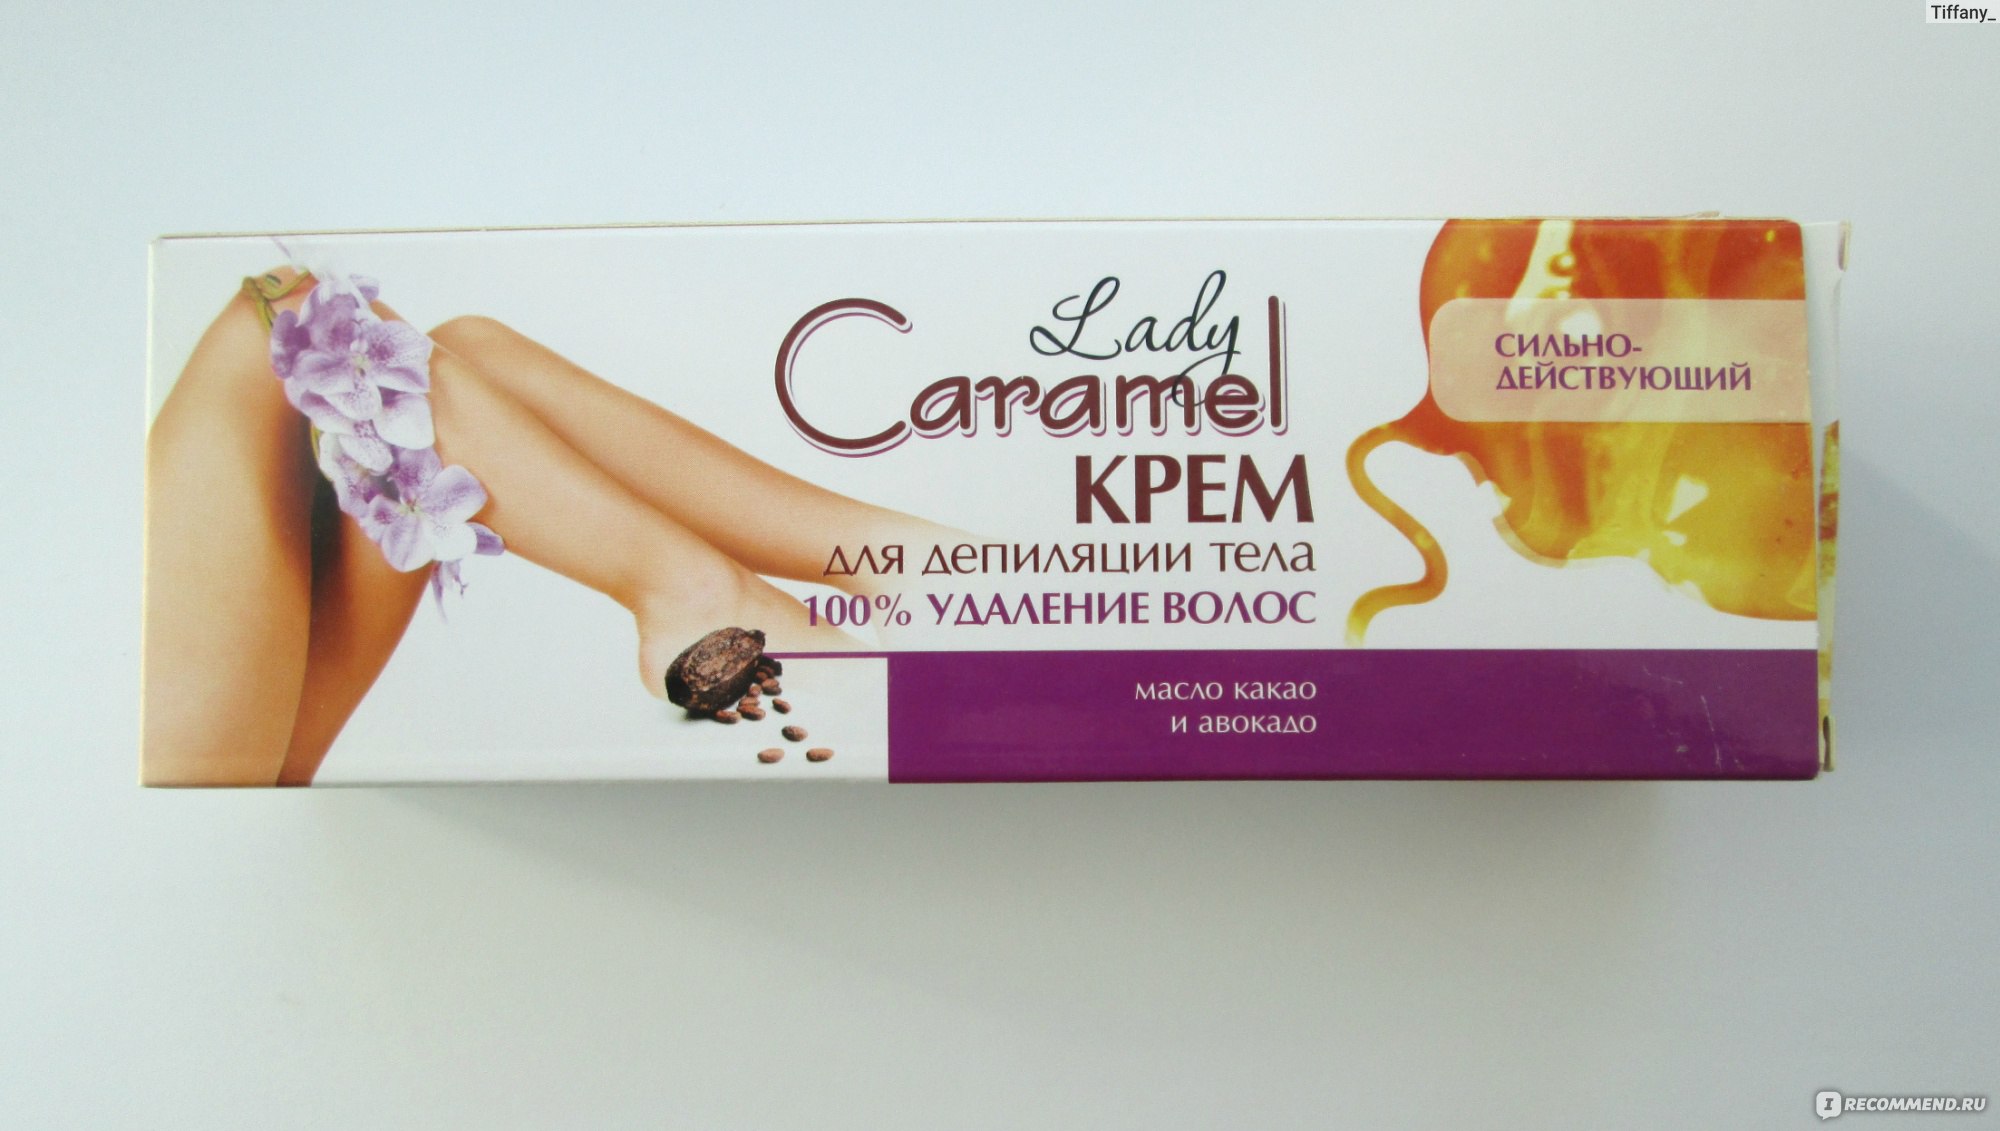 Lady caramel крем для депиляции быстродействующий